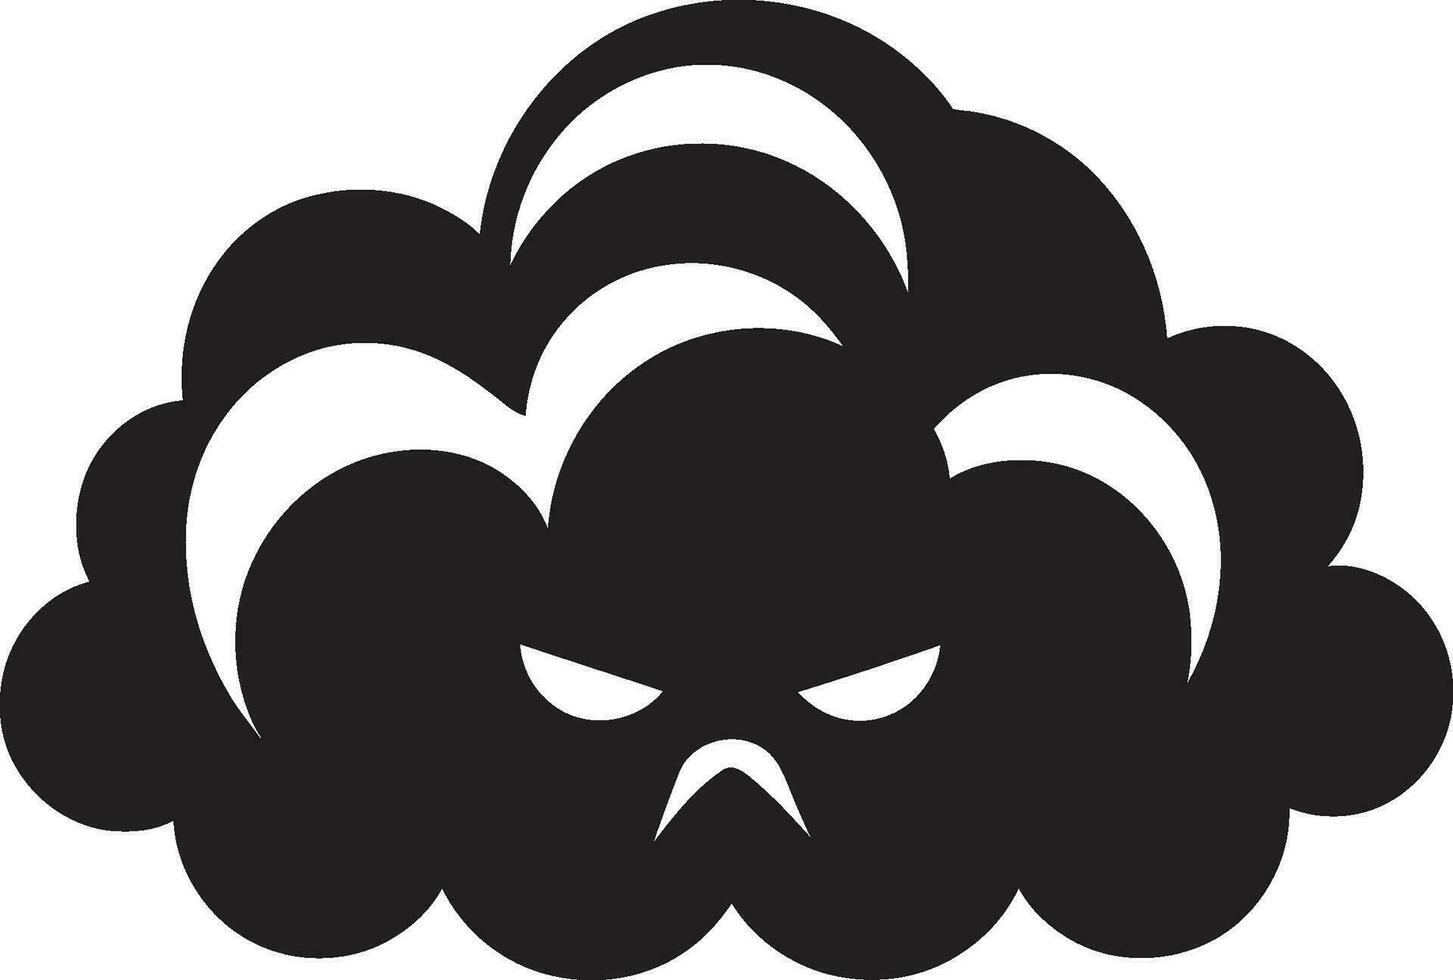 nors buien boos wolk logo ontwerp turbulent nimbus vector boos wolk embleem